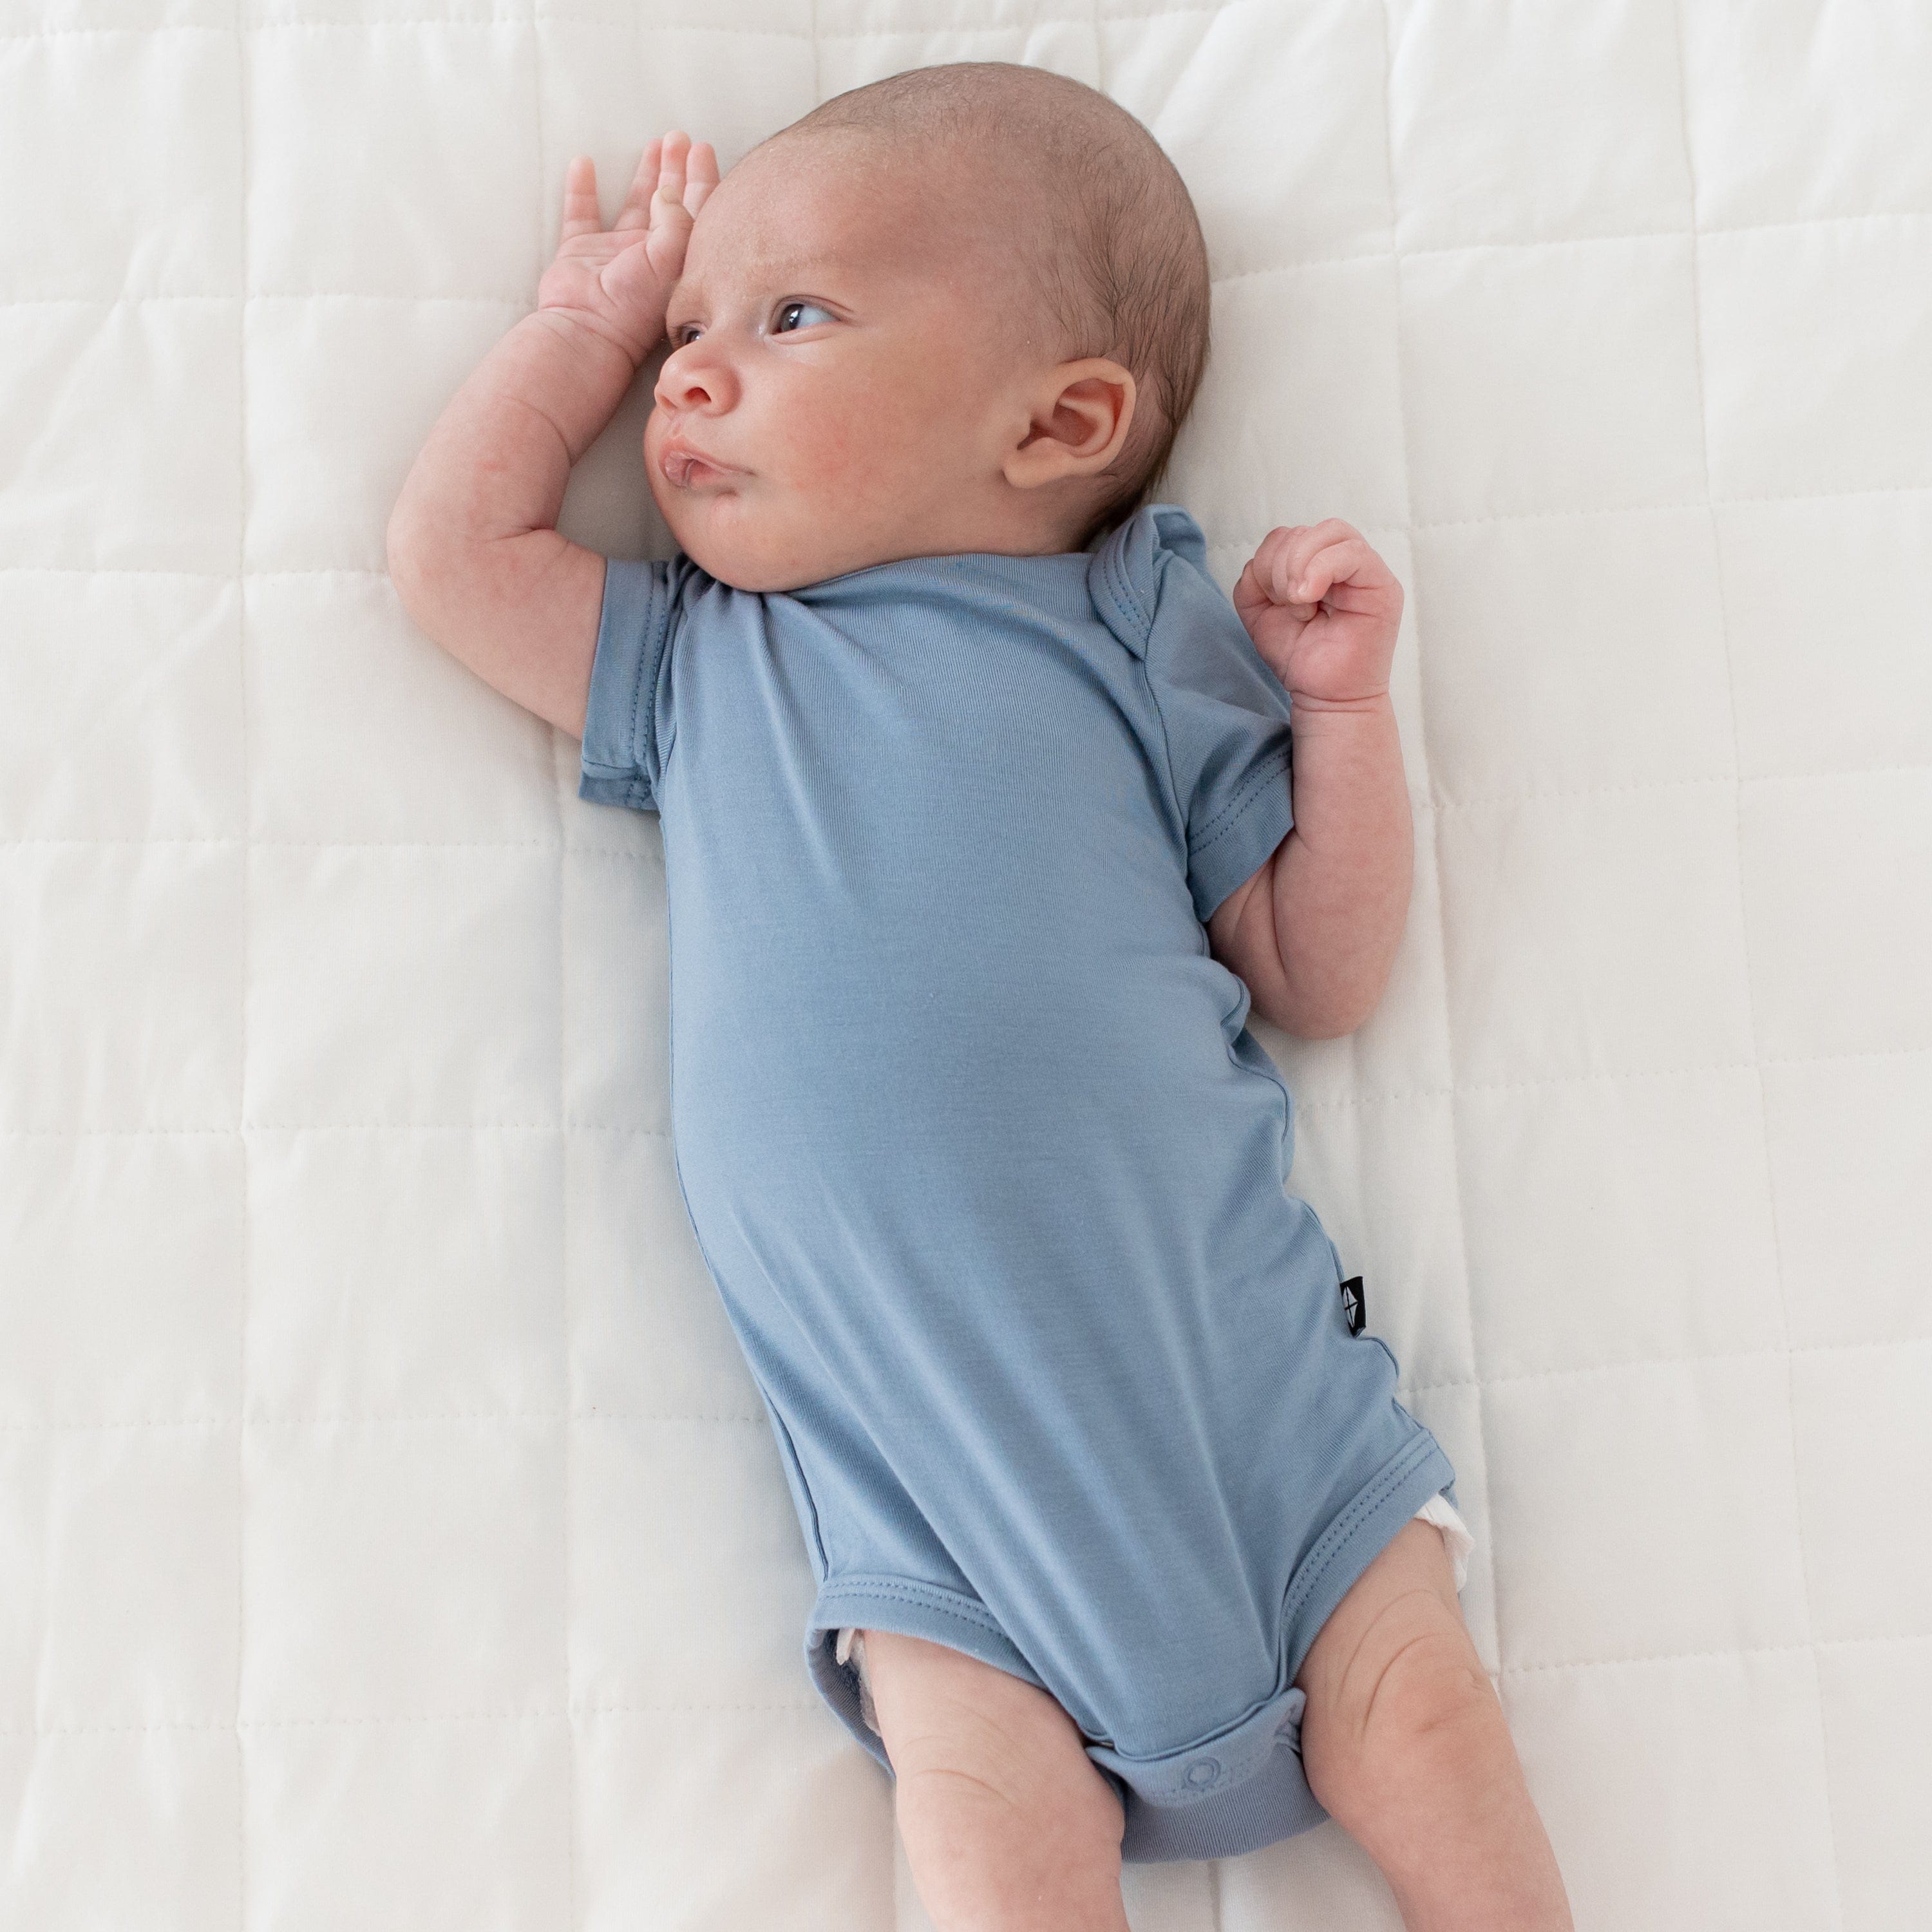 Newborn wearing Kyte Baby Bodysuit in Slate